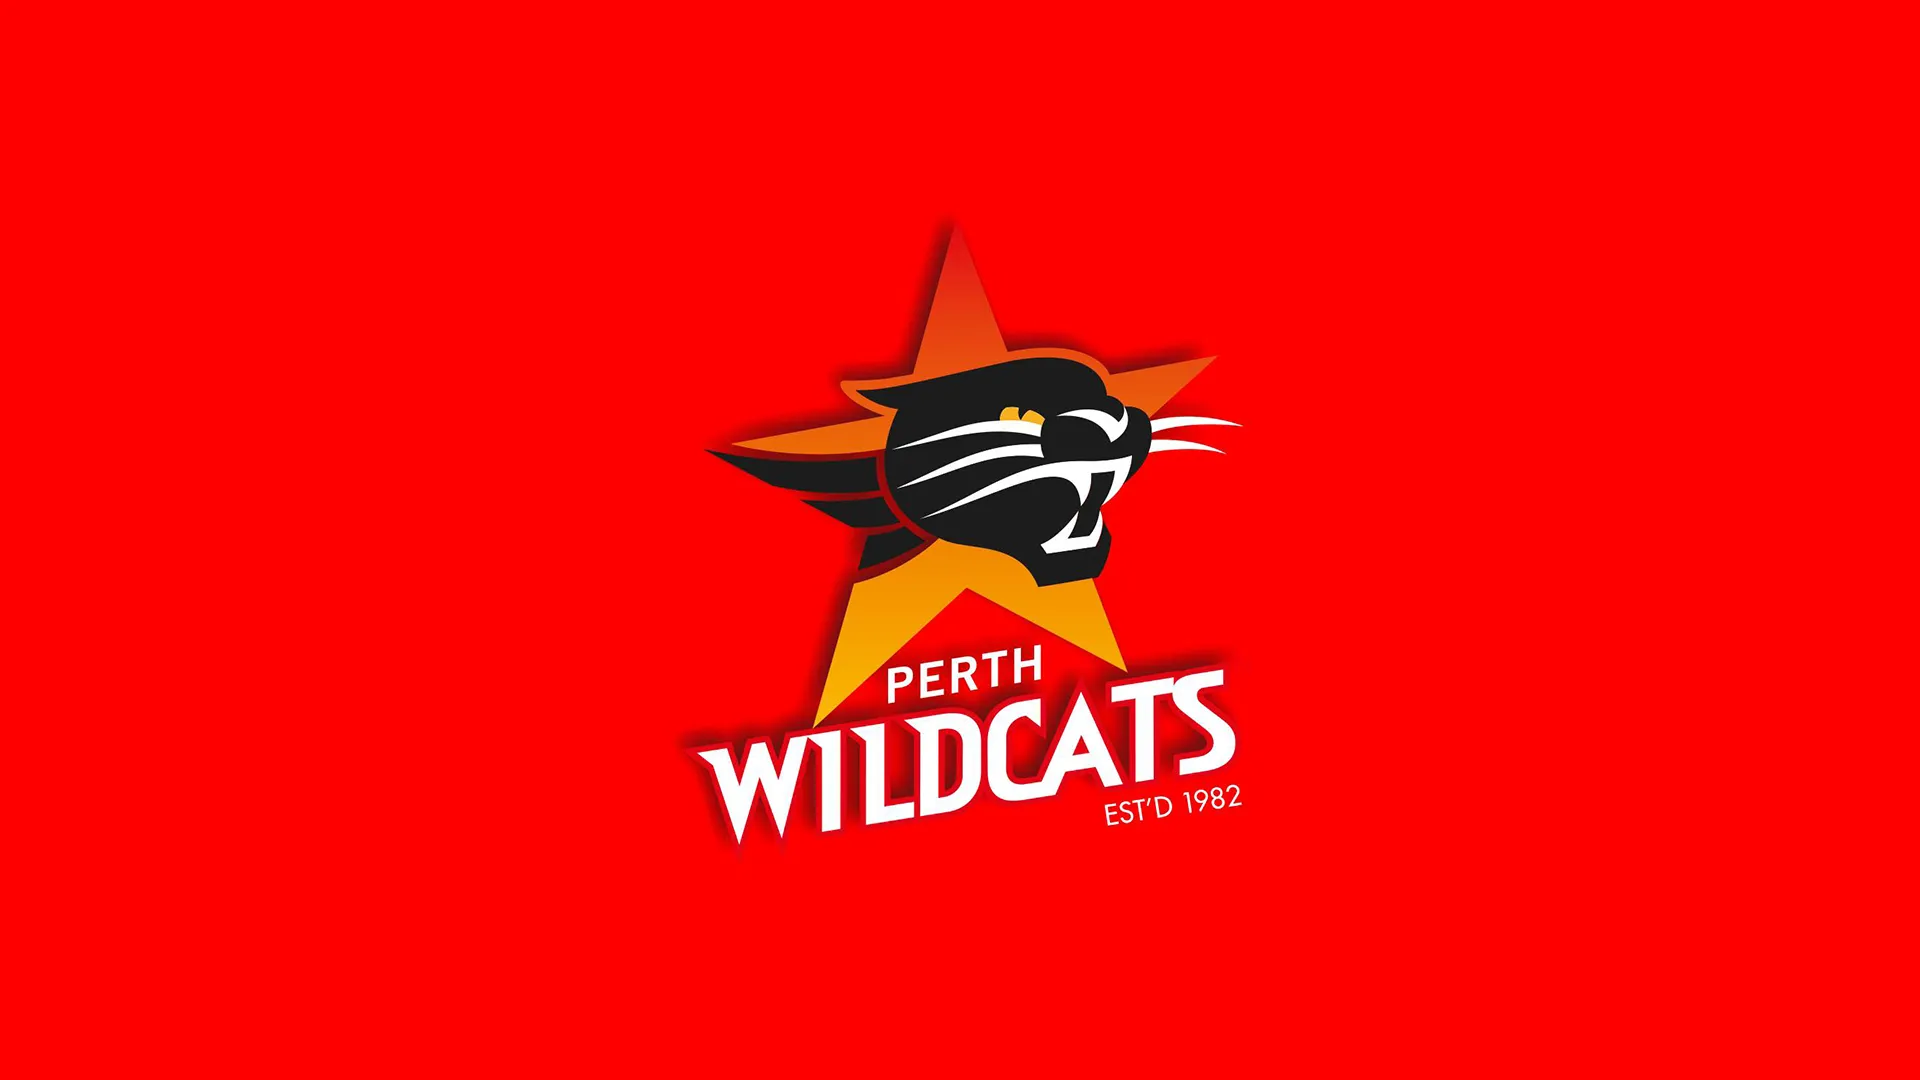 www.wildcats.com.au